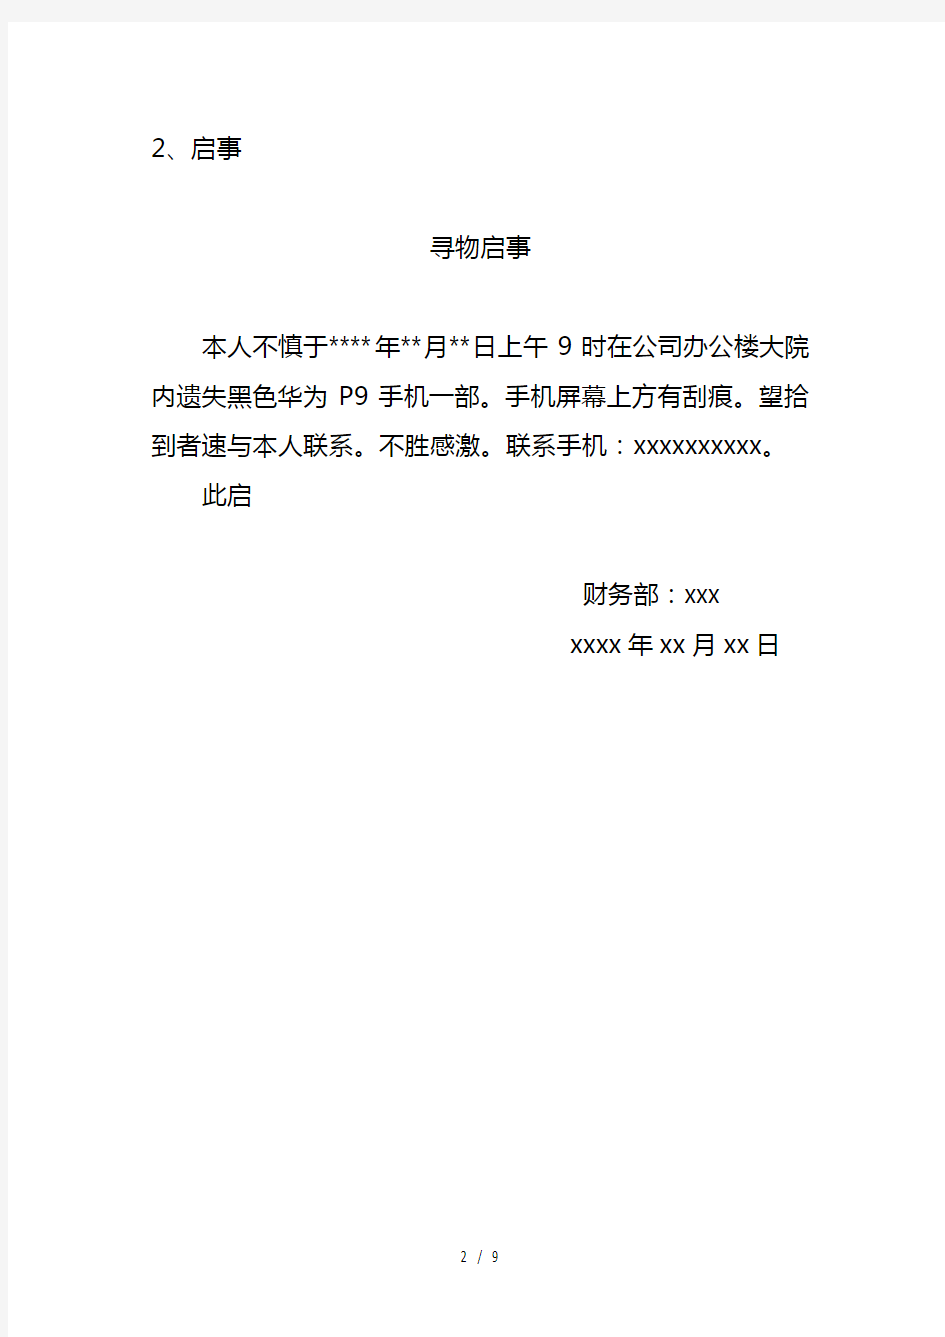 国家开放大学 答案 应用写作(汉语) 形考任务